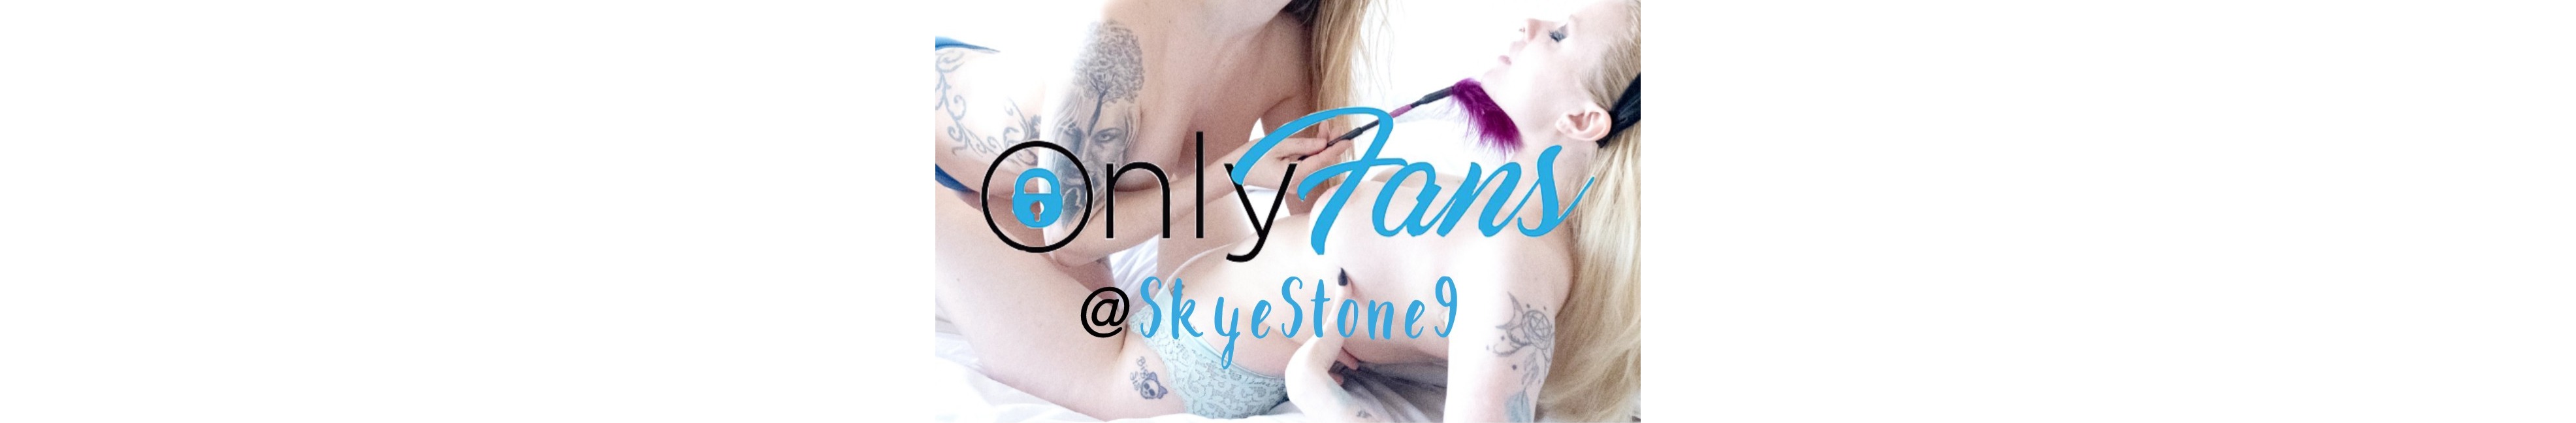 SkyeStone9 - profile image